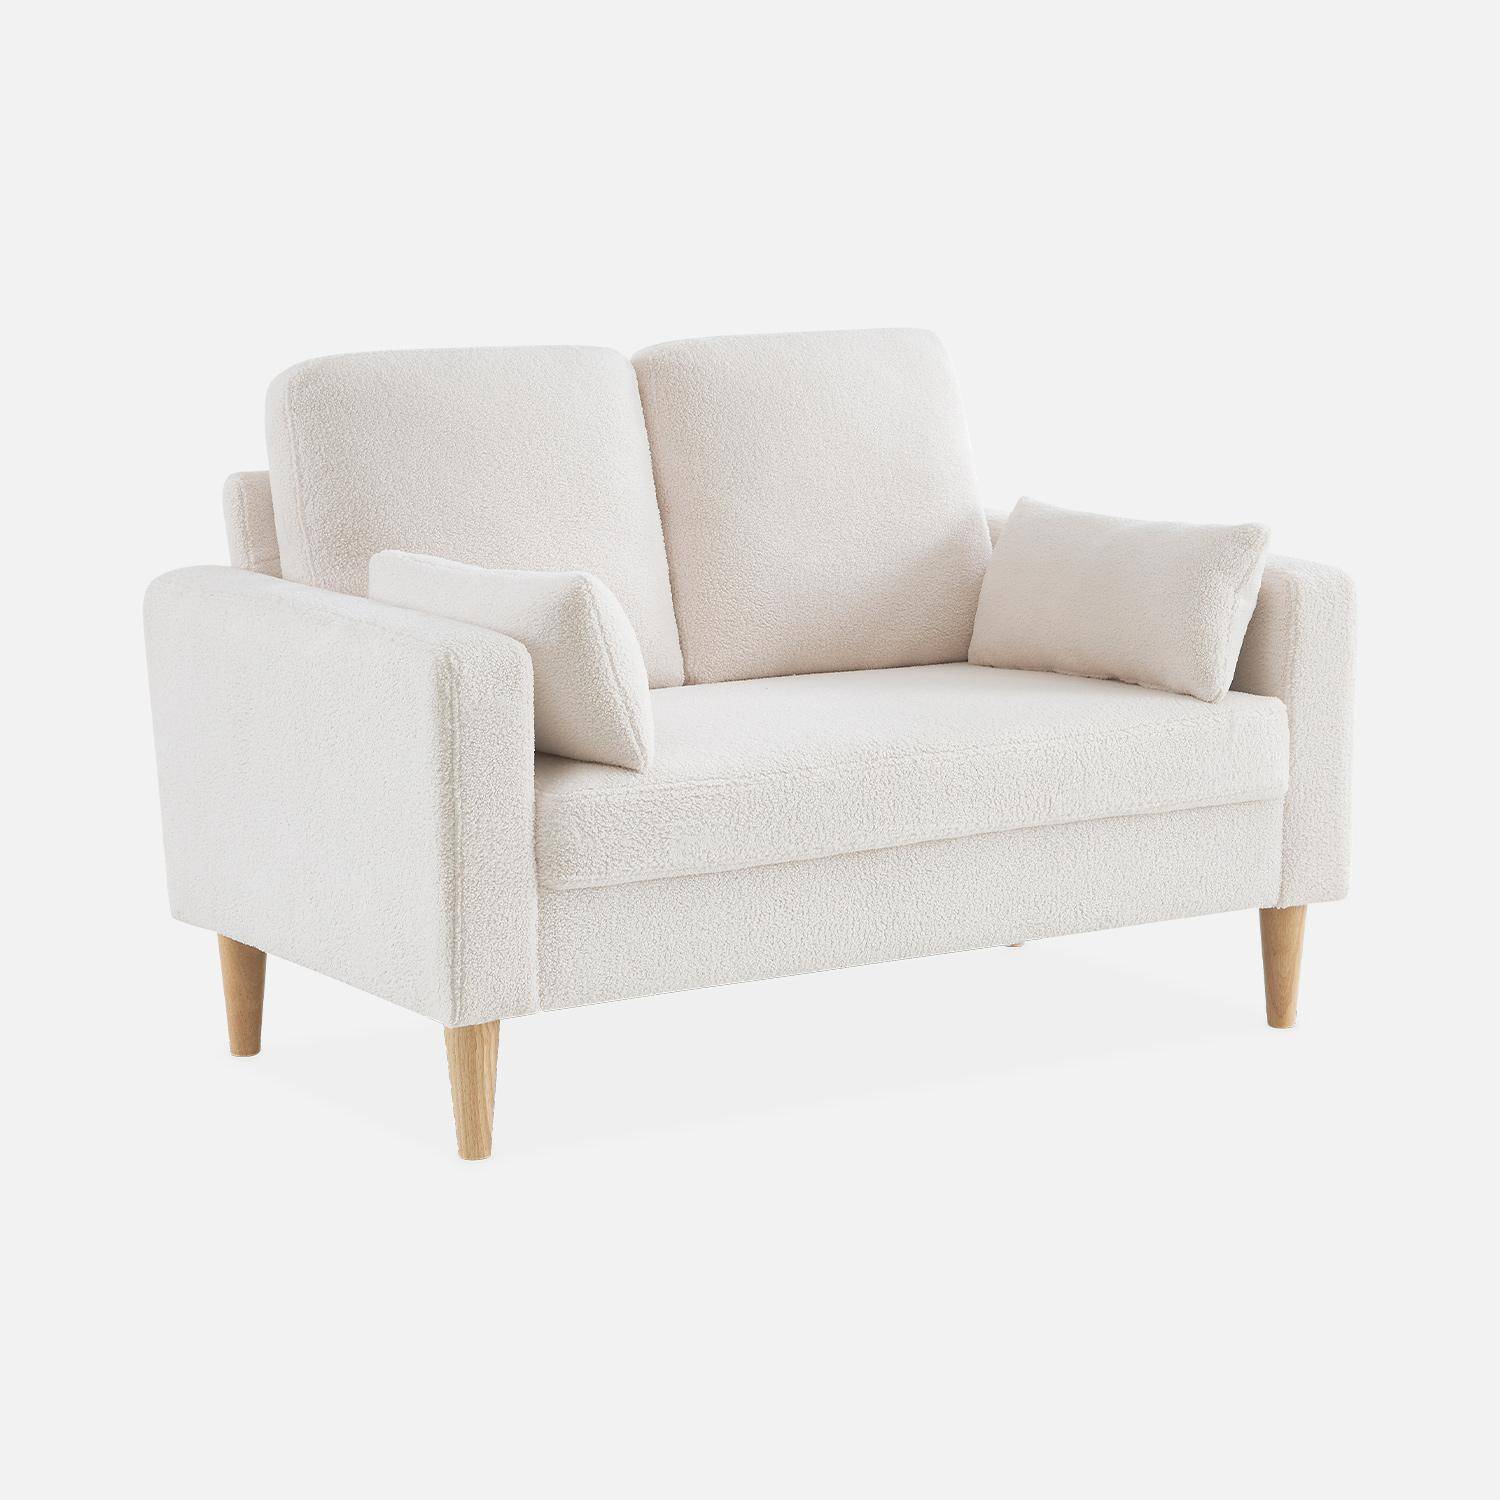 Sofá com caracóis brancos - Bjorn - sofá reto de 2 lugares com pernas de madeira, estilo escandinavo Photo3